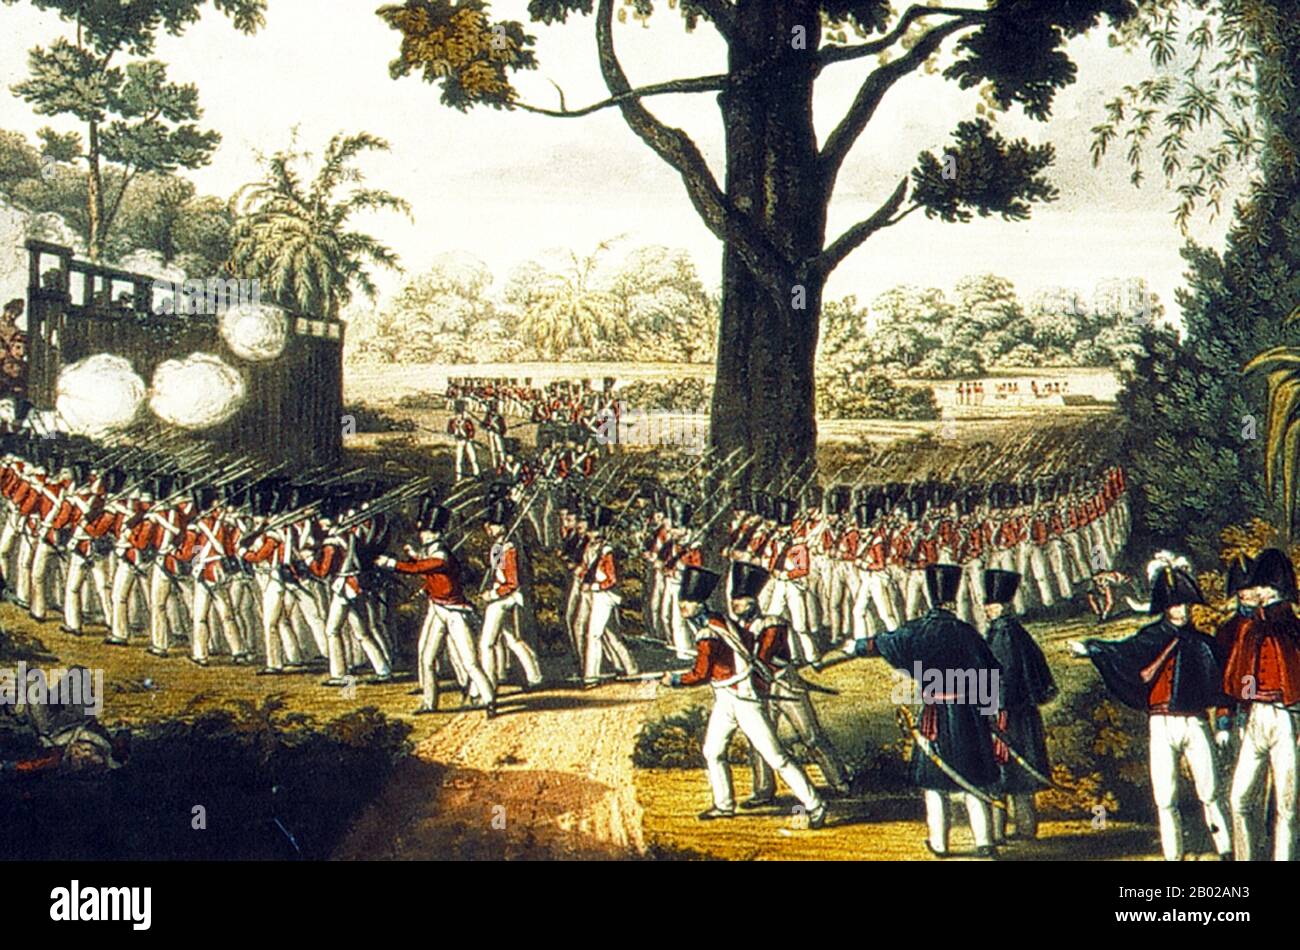 La première guerre anglo-birmane (5 mars 1824 – 24 février 1826) fut la première des trois guerres qui se sont déroulées entre l'Empire britannique et l'Empire birman au XIXe siècle. La guerre, qui a commencé principalement par le contrôle du nord-est de l'Inde, s'est terminée par une victoire britannique décisive, donnant le contrôle total britannique d'Assam, de Manipur, de Cachar et de Jaintia ainsi que de la province d'Arakan et de Tenasserim. Les Birmans ont également été contraints de payer une indemnité d'un million de livres sterling et de signer un traité commercial. La guerre a été la guerre la plus longue et la plus coûteuse de l'histoire de l'Inde britannique. Quinze mille Européens et Indi Banque D'Images